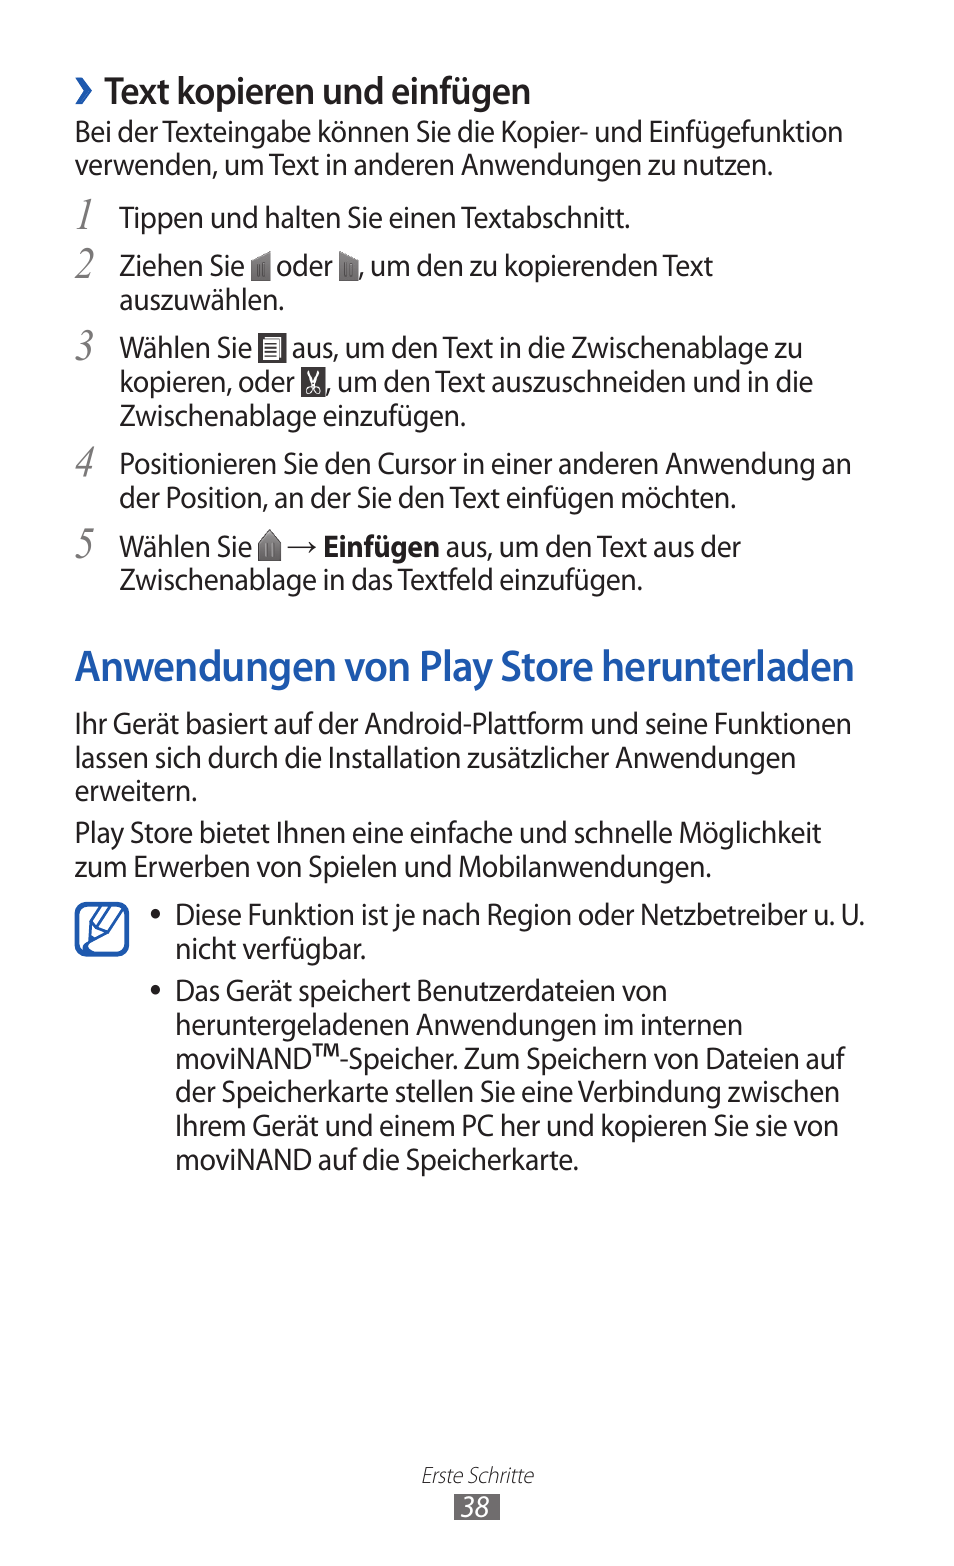 Anwendungen von play store herunterladen, Text kopieren und einfügen | Samsung GT-I9100P Benutzerhandbuch | Seite 38 / 170